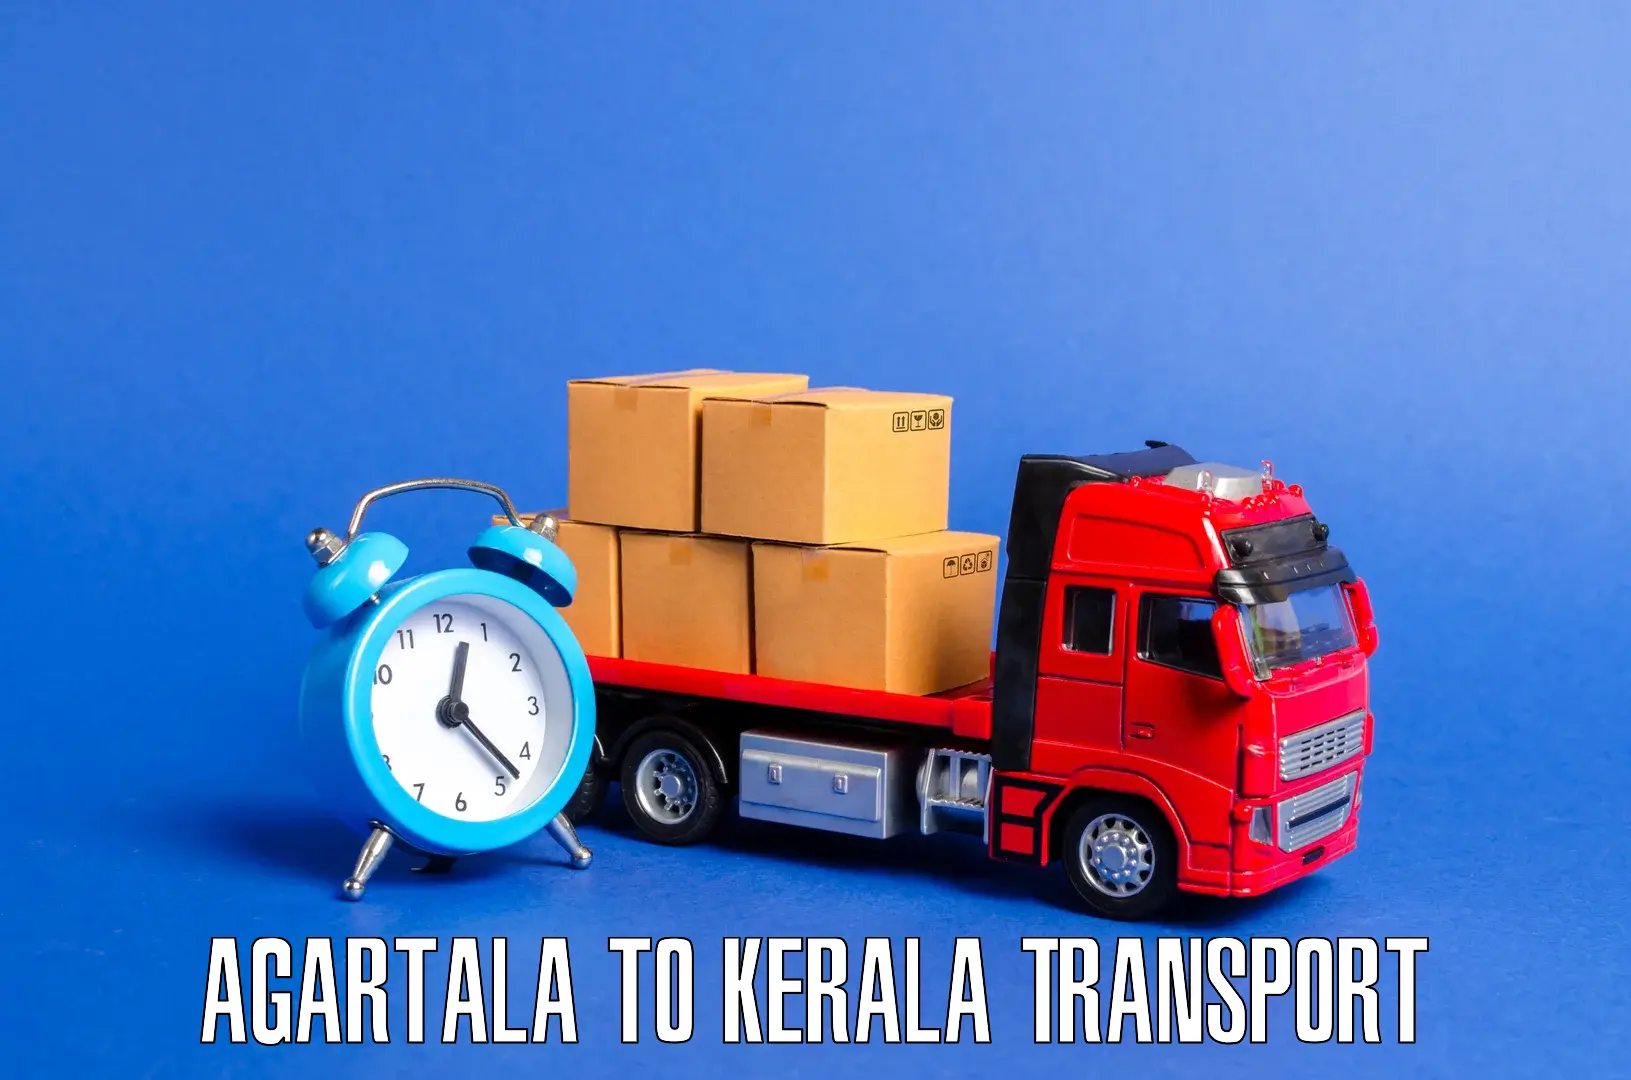 Door to door transport services in Agartala to Pallikkara